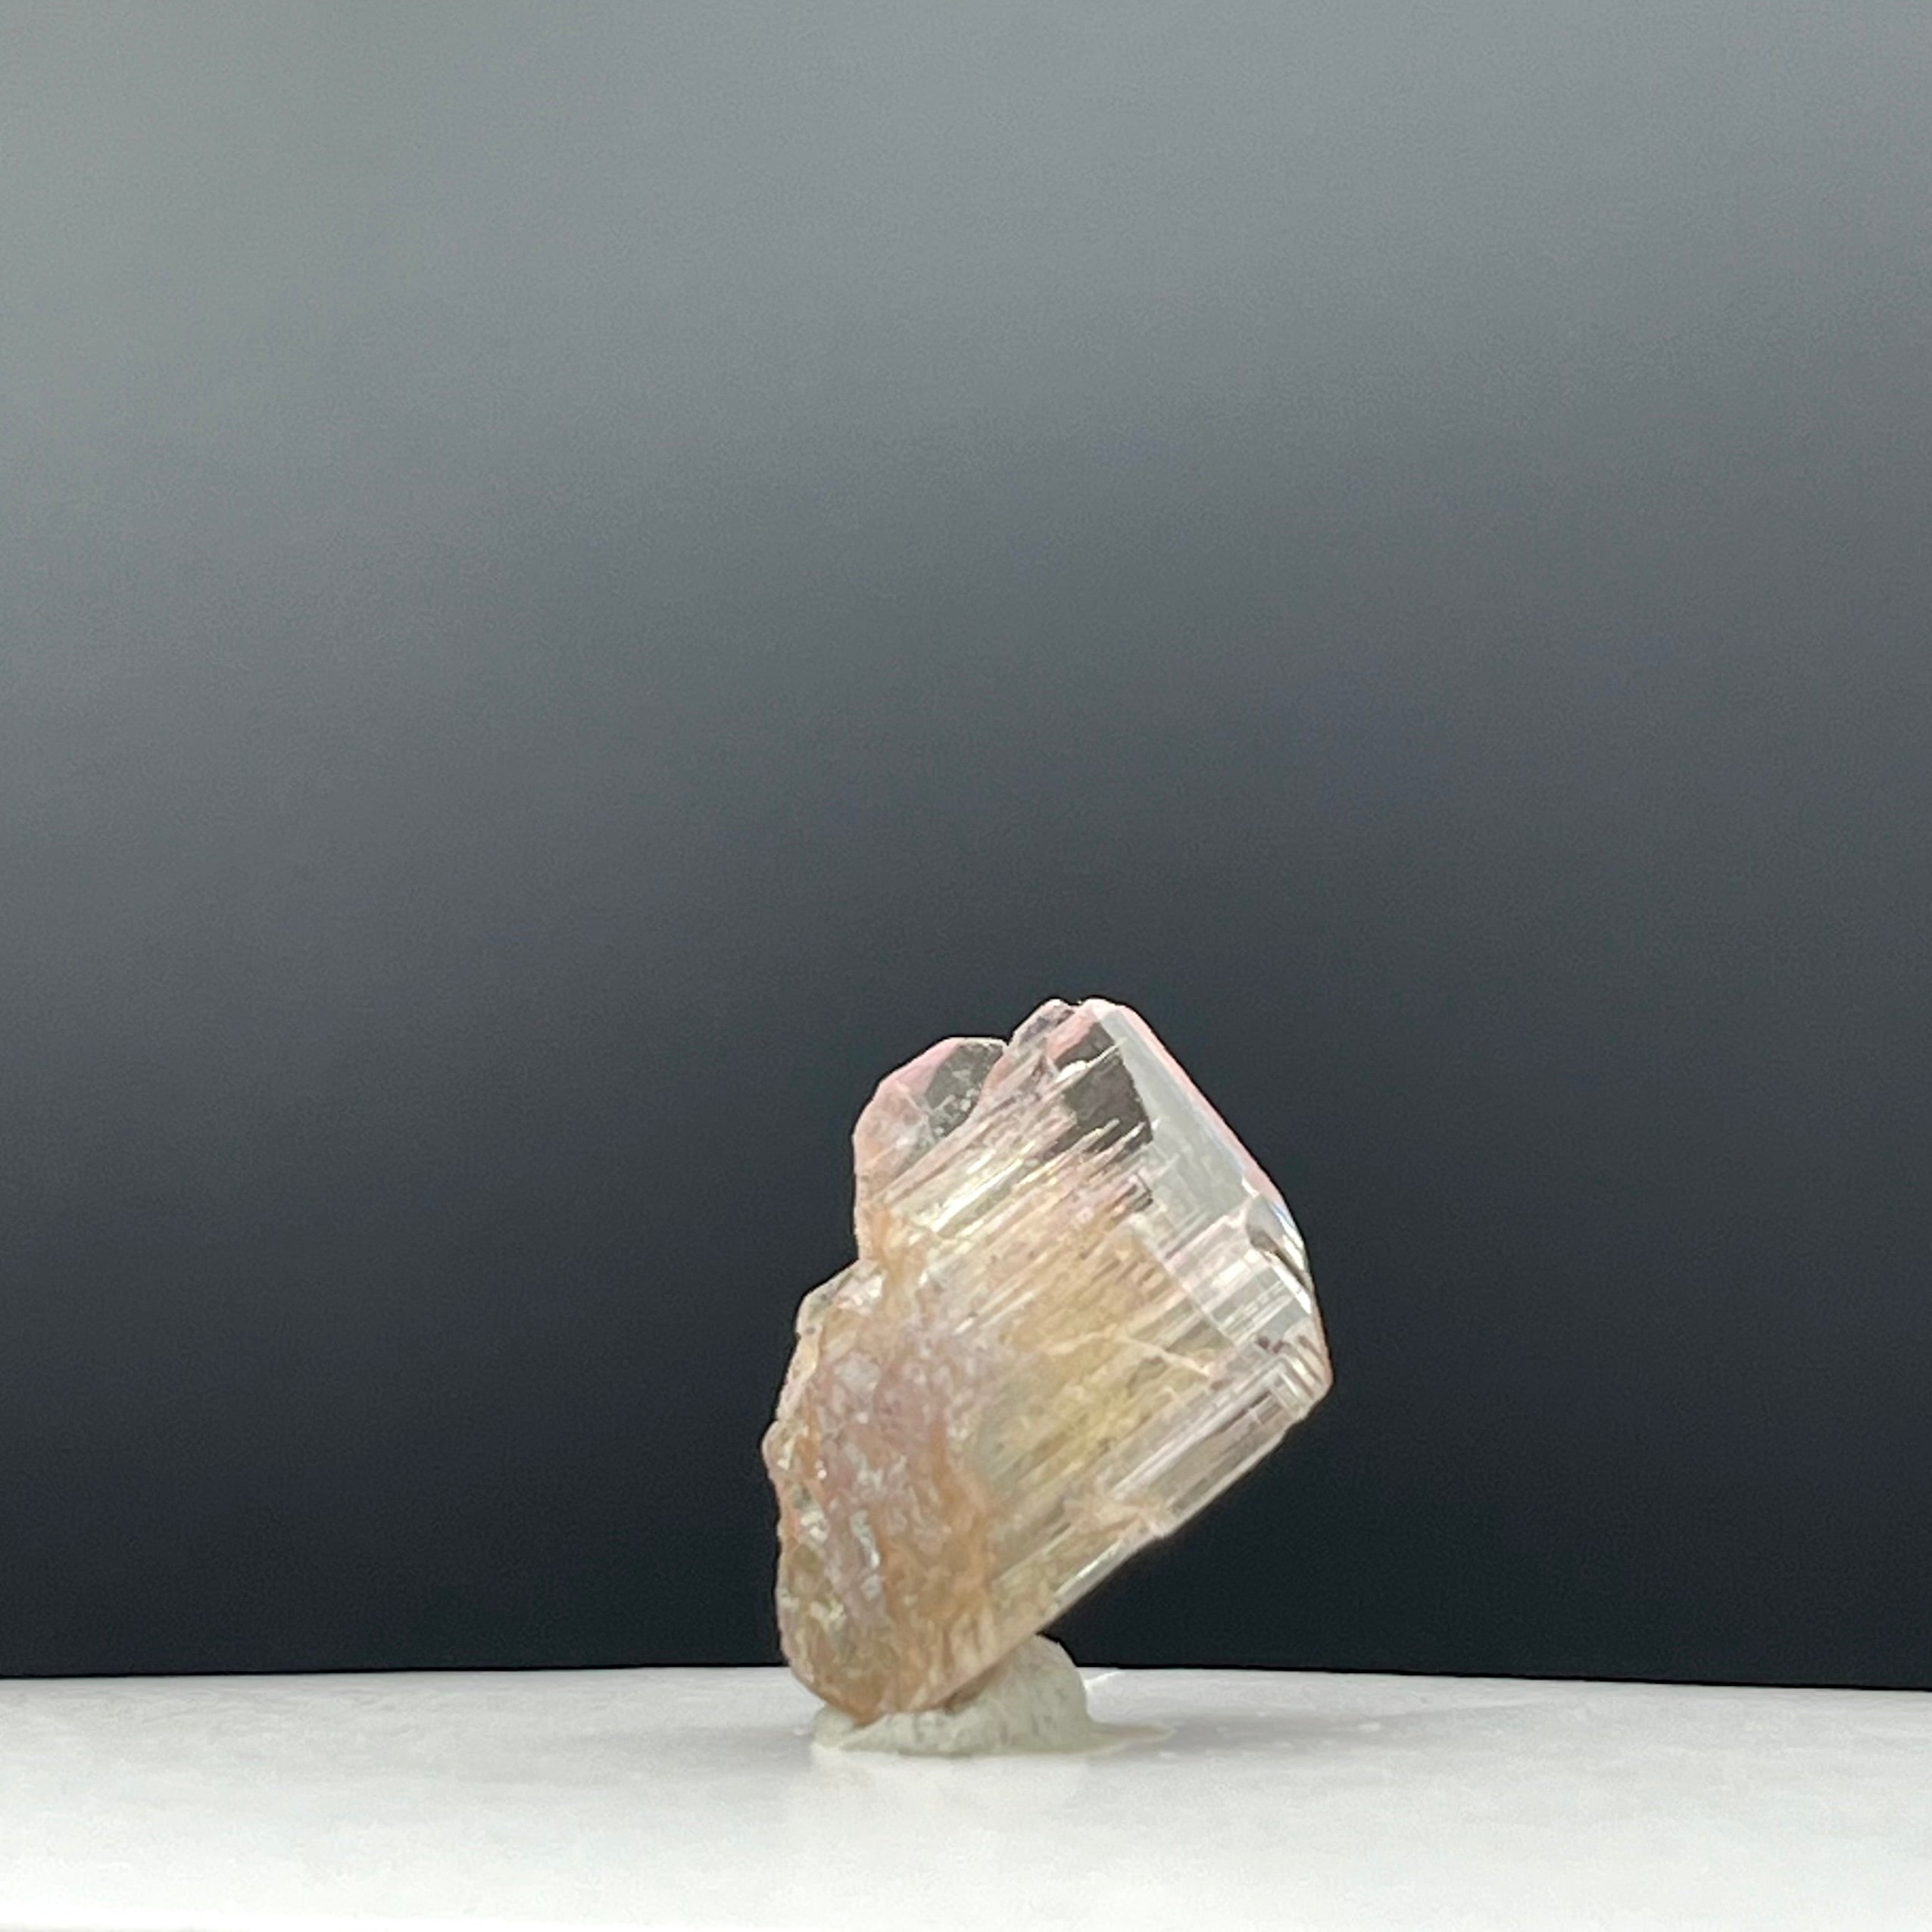 Real Tanzanite Crystal - 113